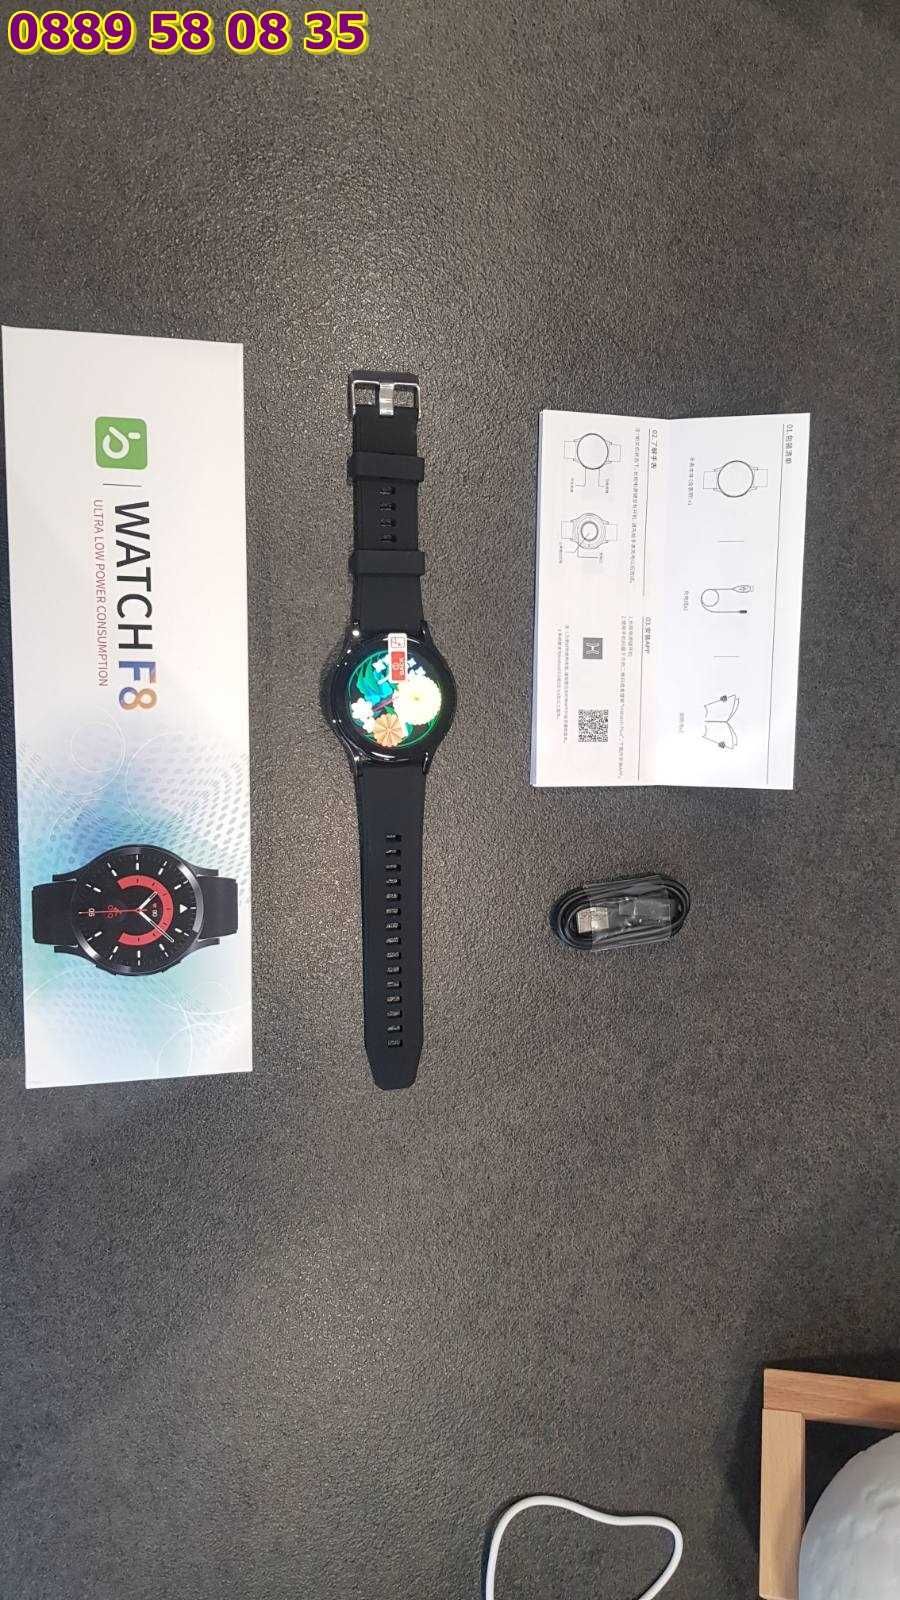 Смарт часовник Smart Watch F8 пулс и крачкомер спортен мъжки